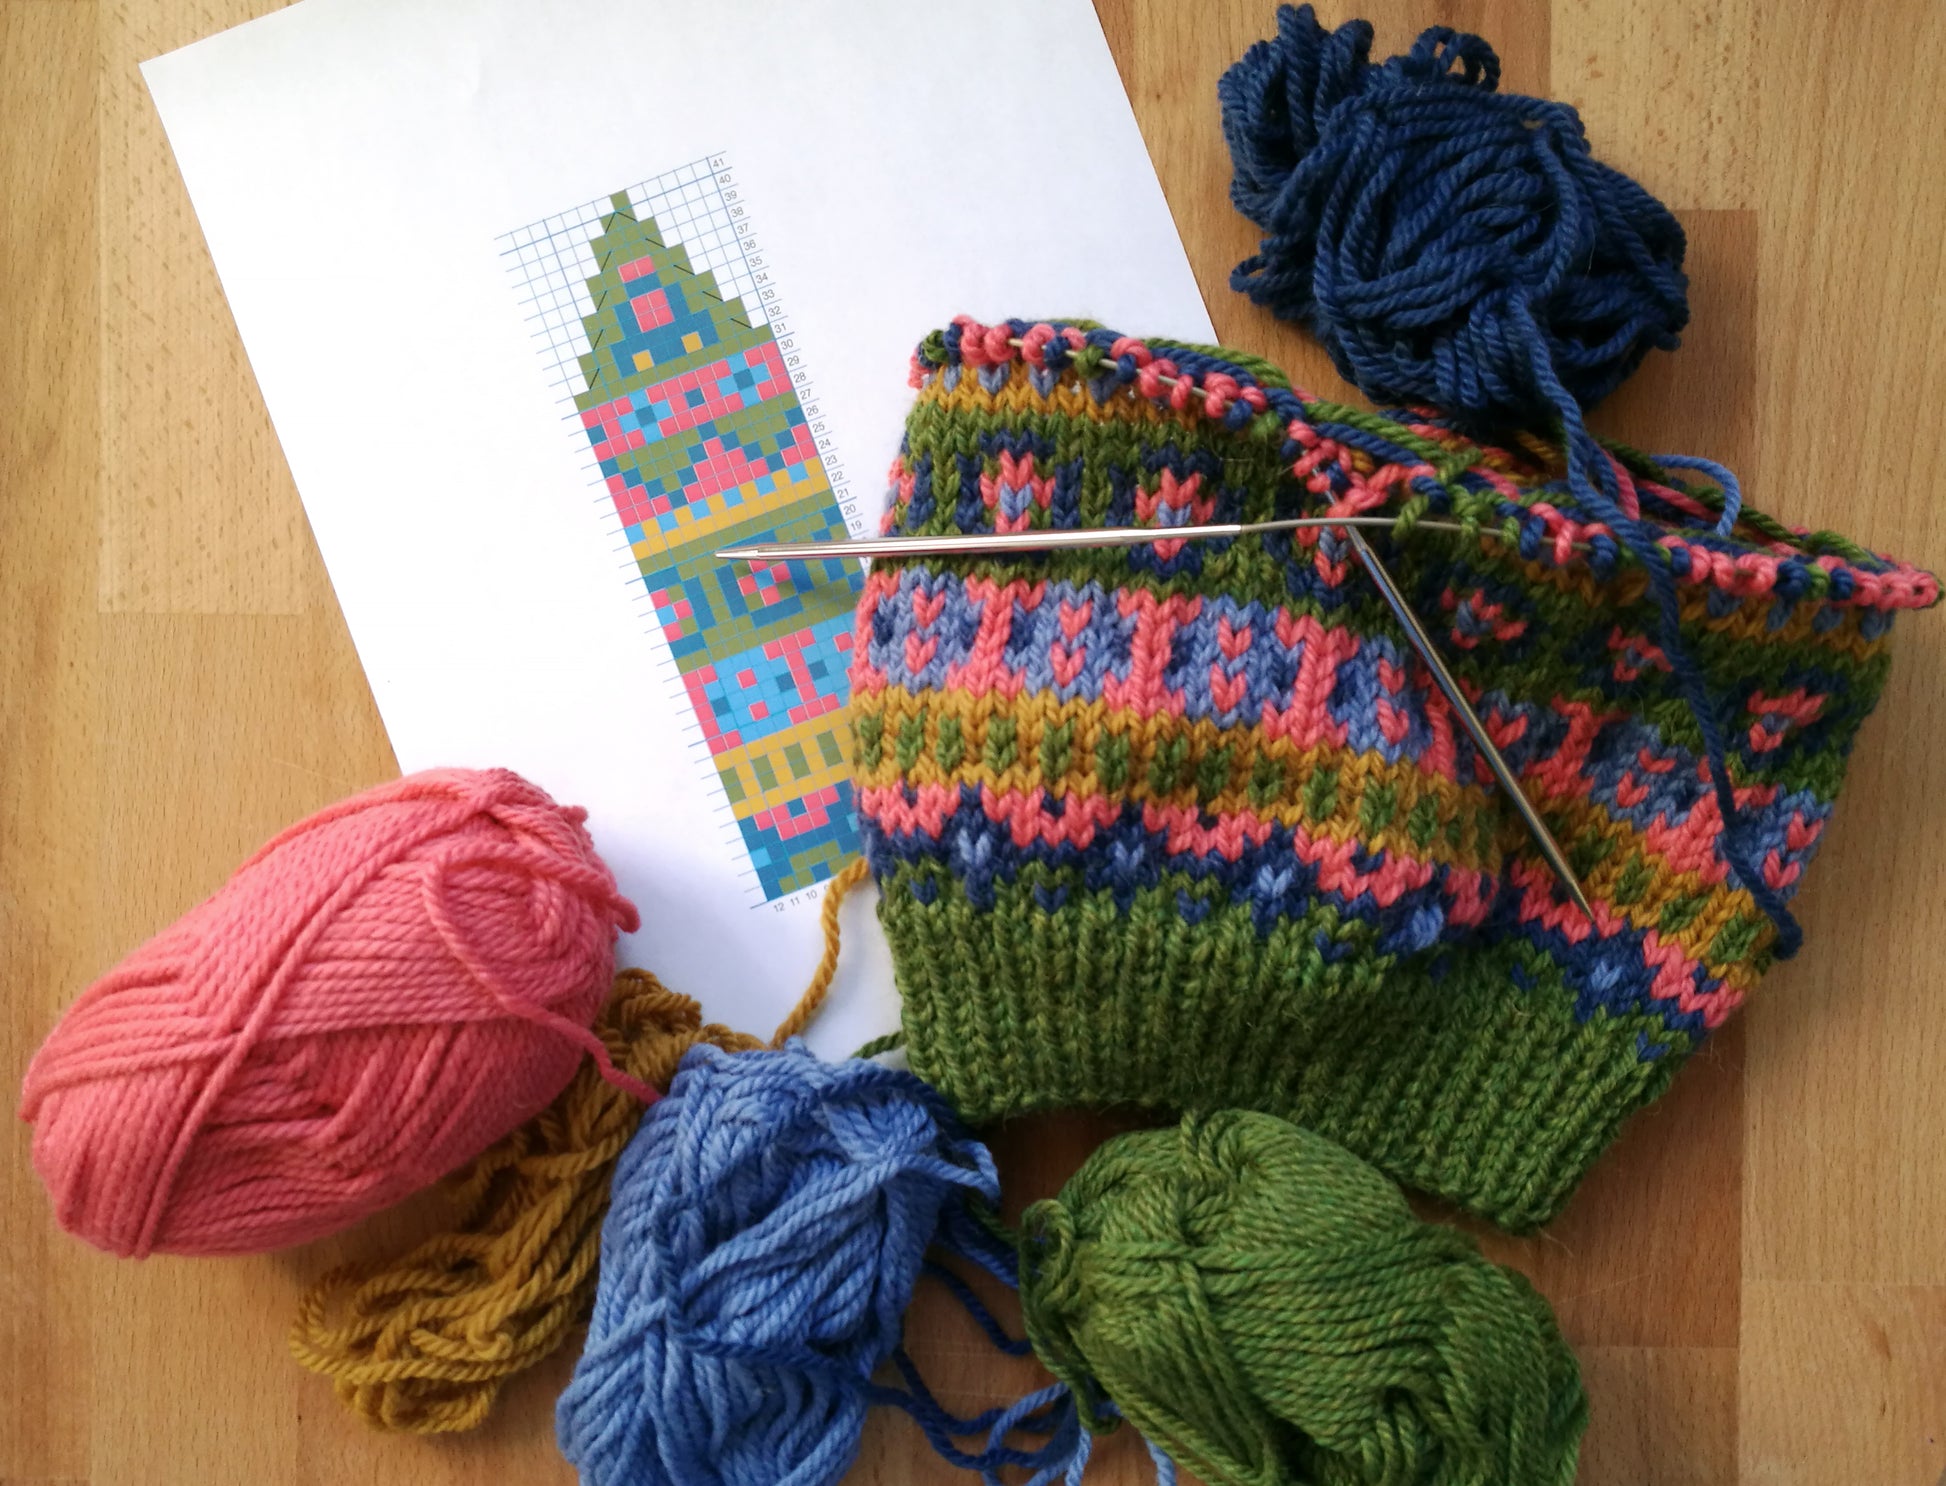 Hand-knitted Fair Isle hat in Bergen knitting pattern in progress